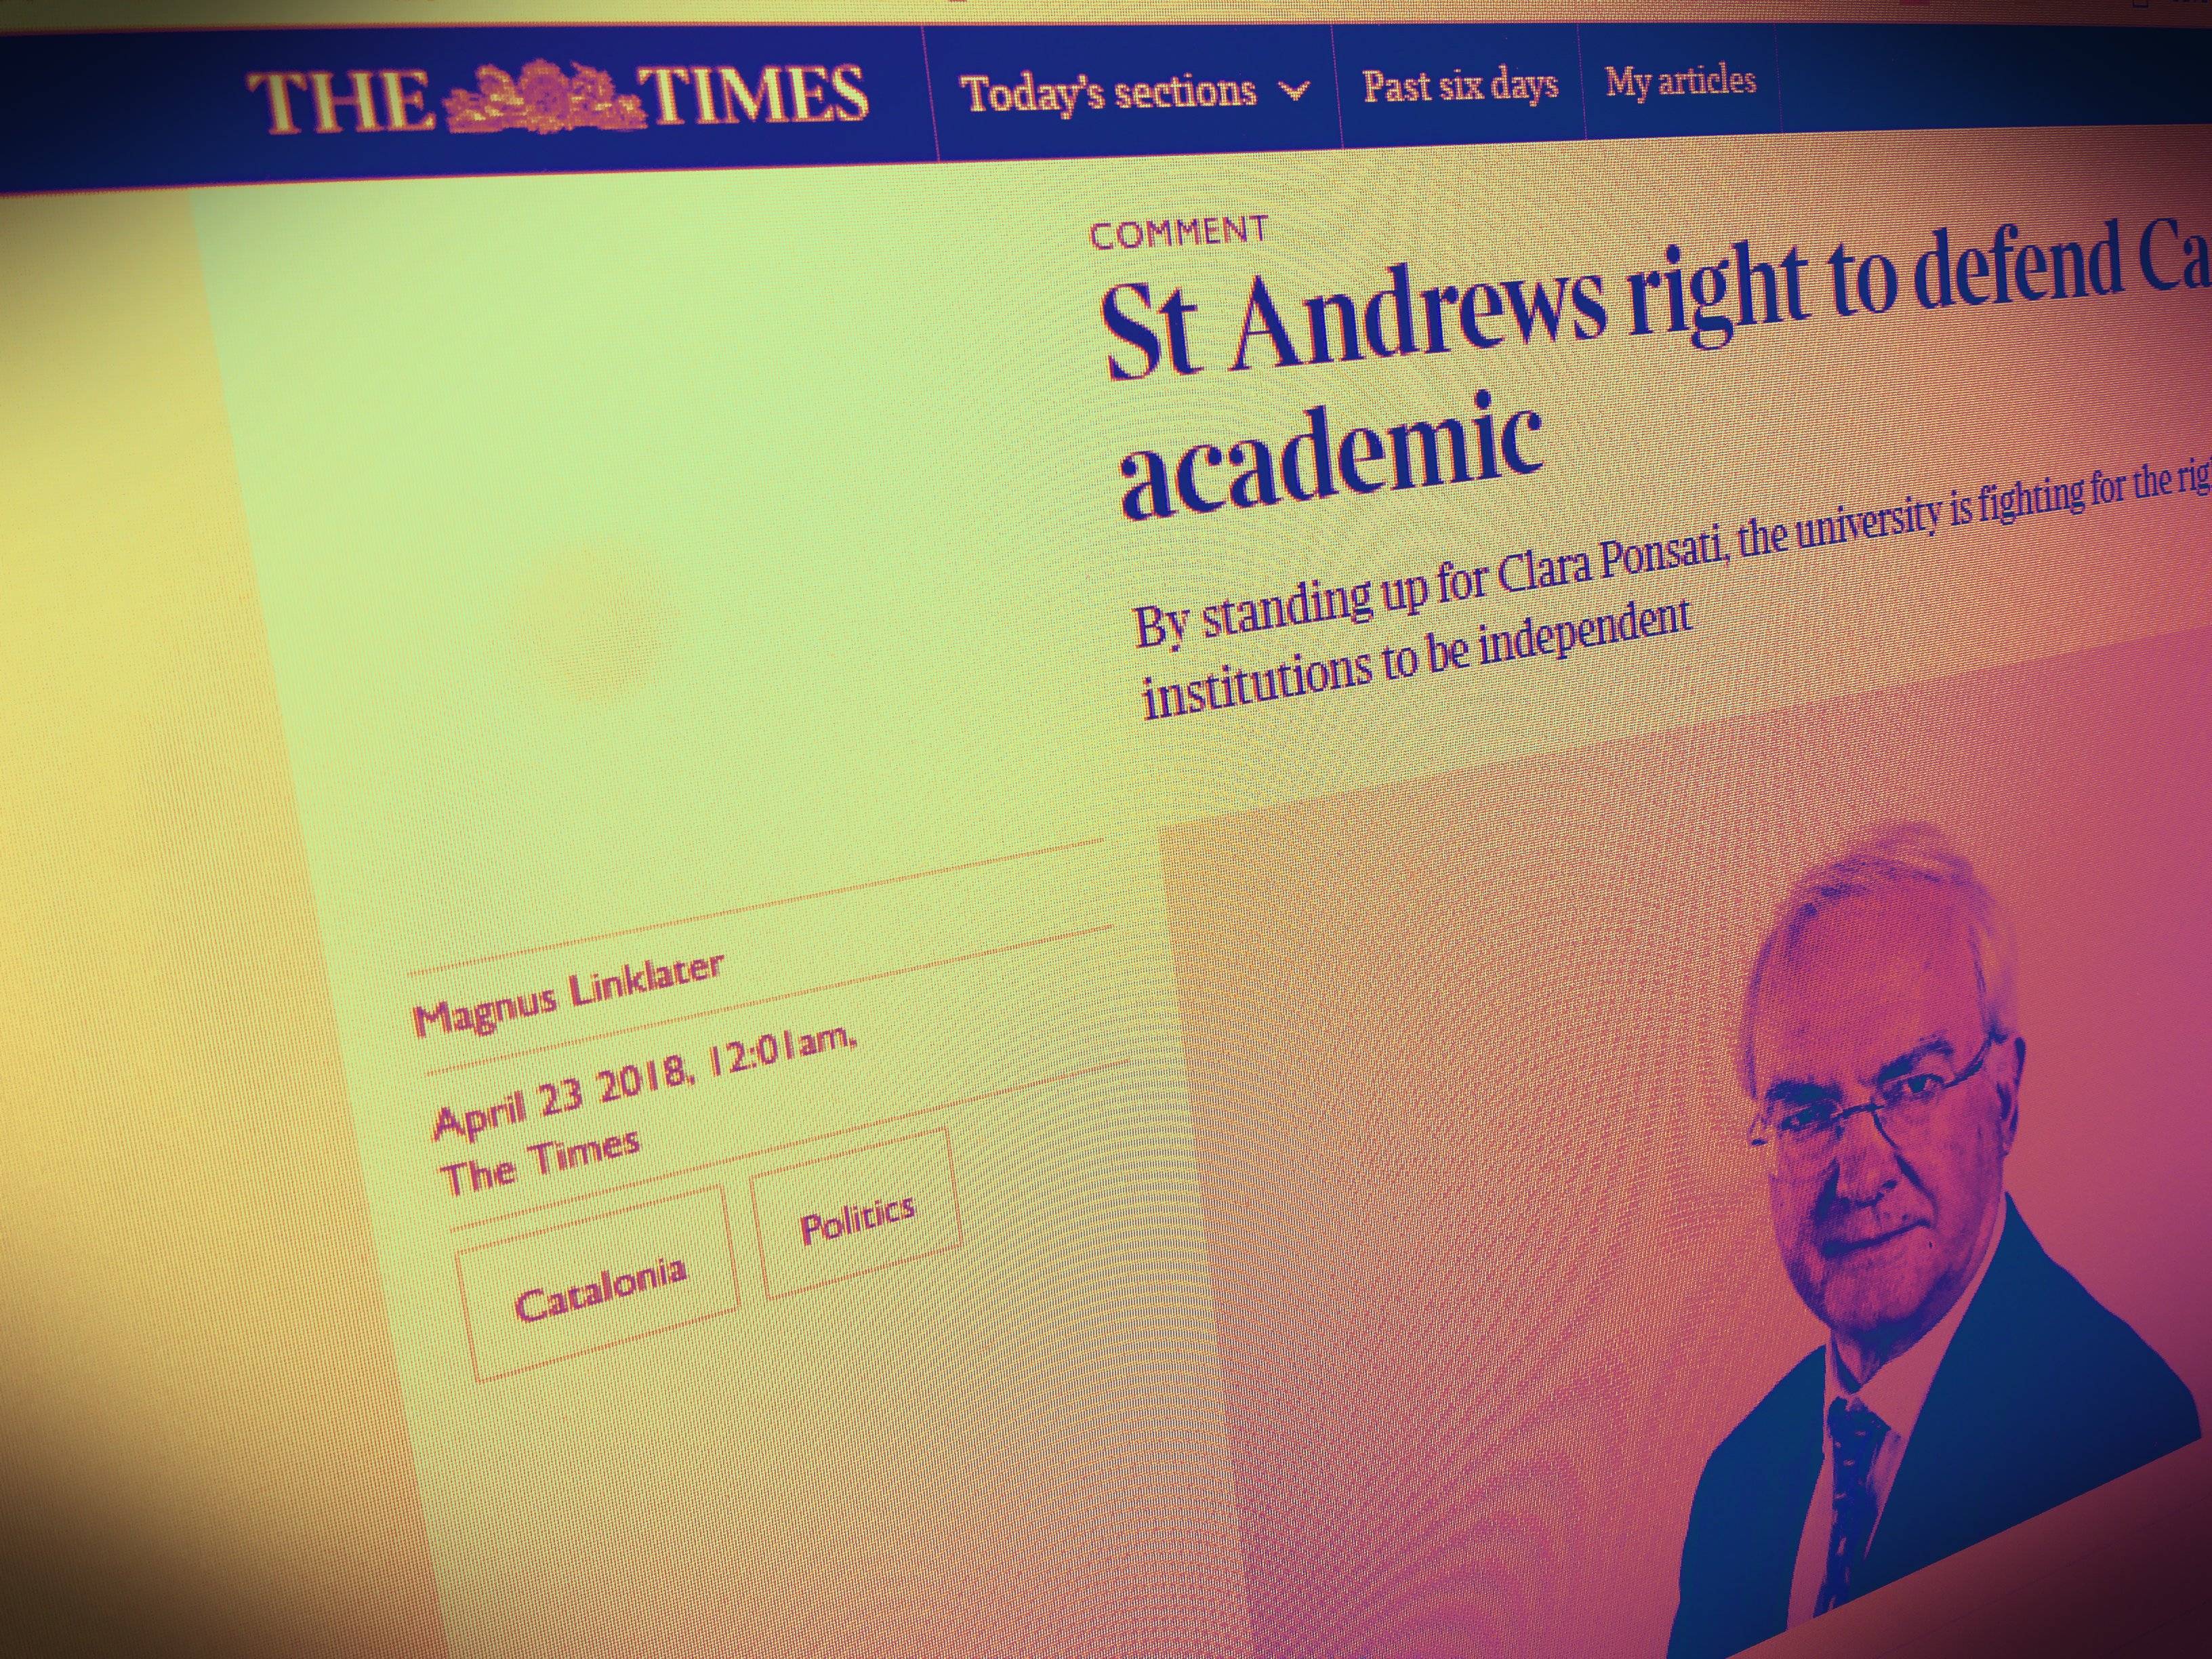 St Andrews té "tot el dret de defensar Ponsatí", escriu Linklater a 'The Times'